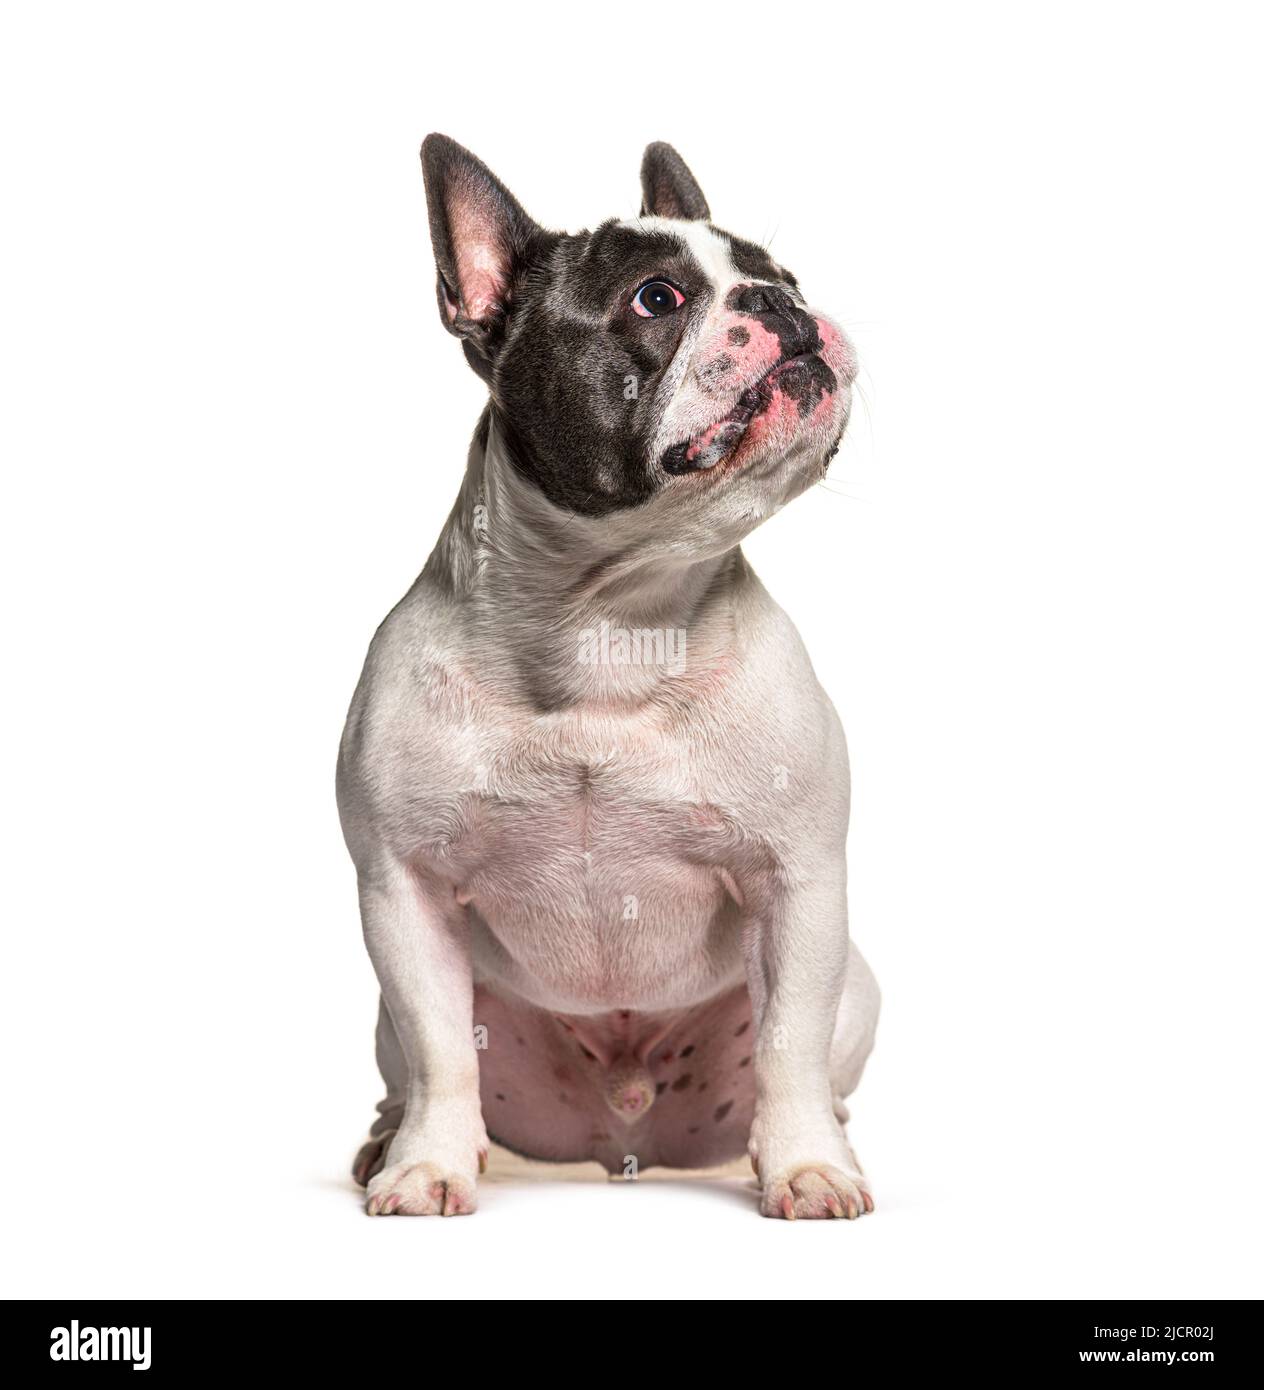 Bulldog francés mirando hacia arriba, sentado frente a fondo blanco Foto de stock